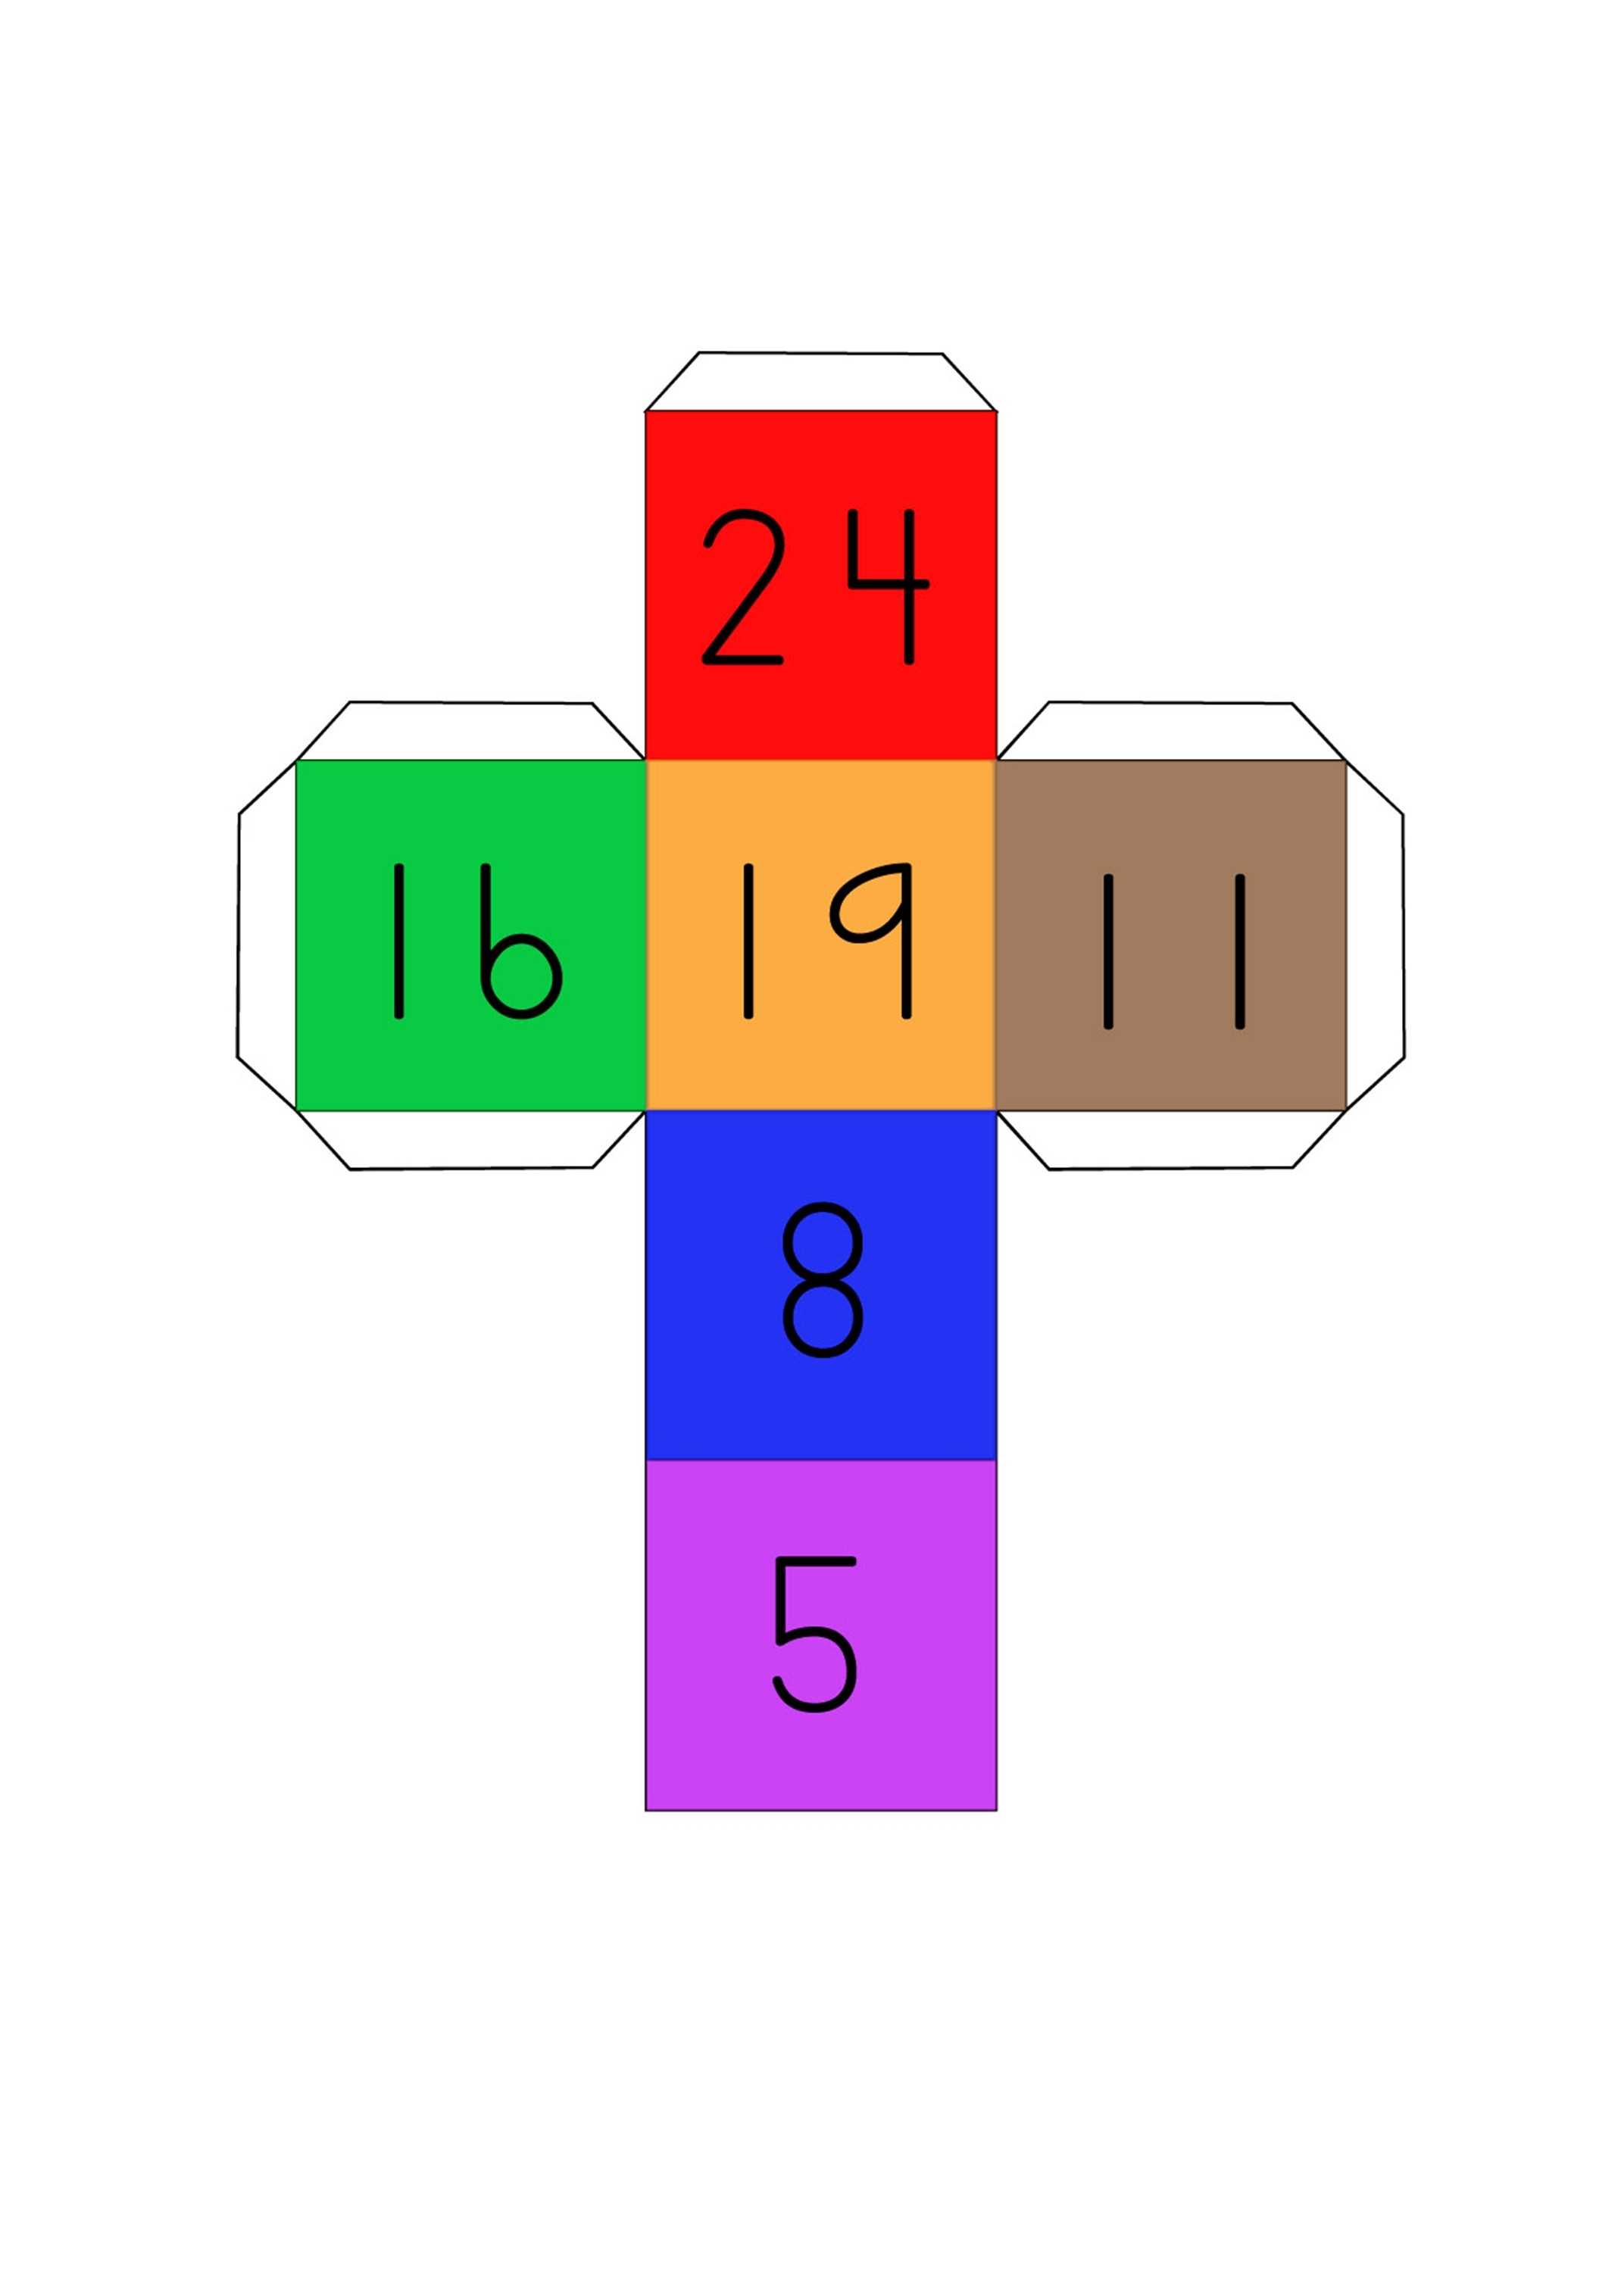 Matemaatikaga seotud mängud Cubico14